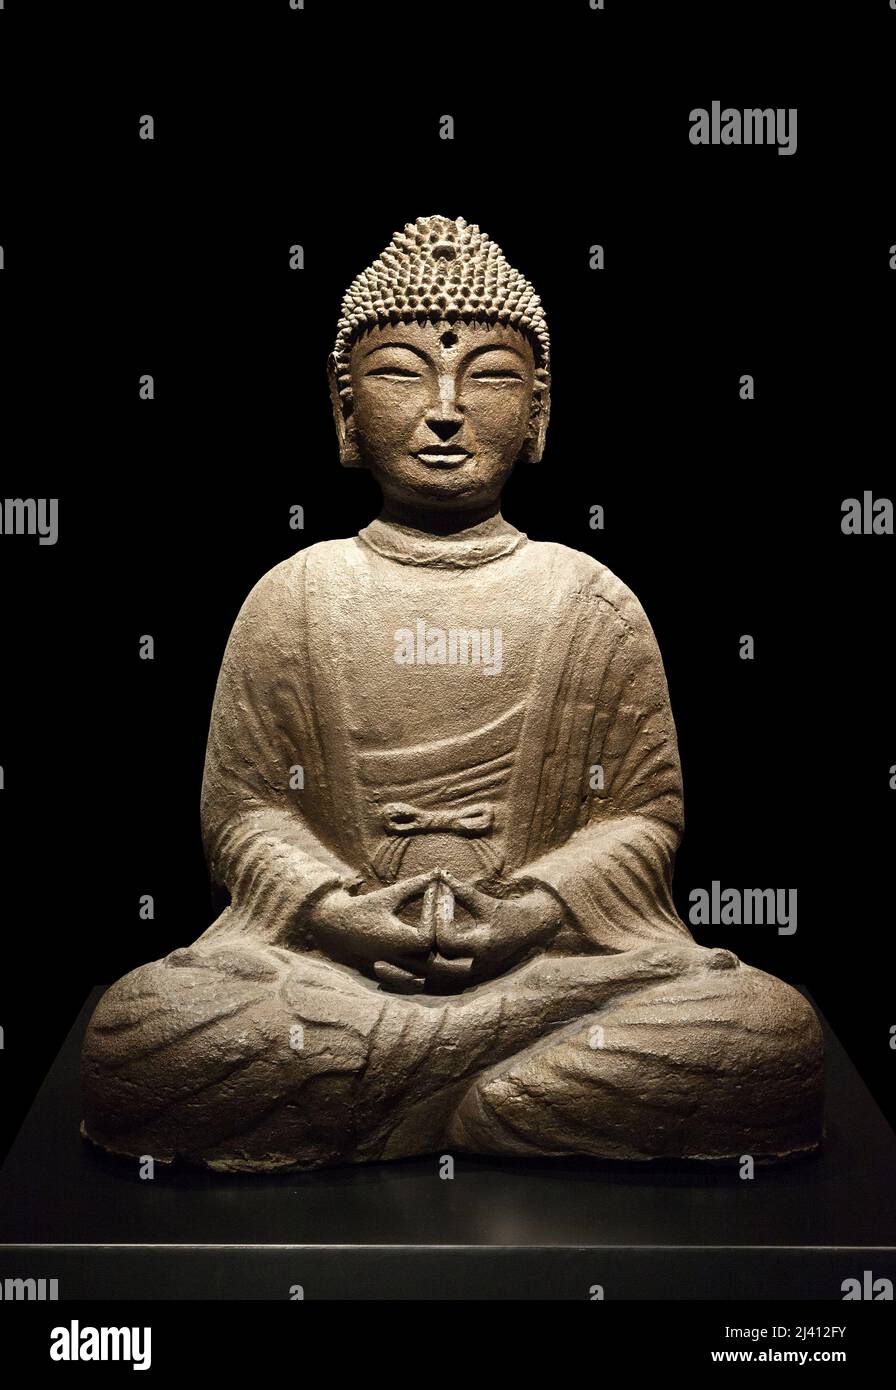 Bouddha Amitabha (Amida), regnant sur la Terre pure occidentale de la Beatitude, Sculpture en fonte, datant de l’epoque du royaume de Goryeo (918-1392).  Musee national de Coree, Seoul, Coree du Sud. Stock Photo